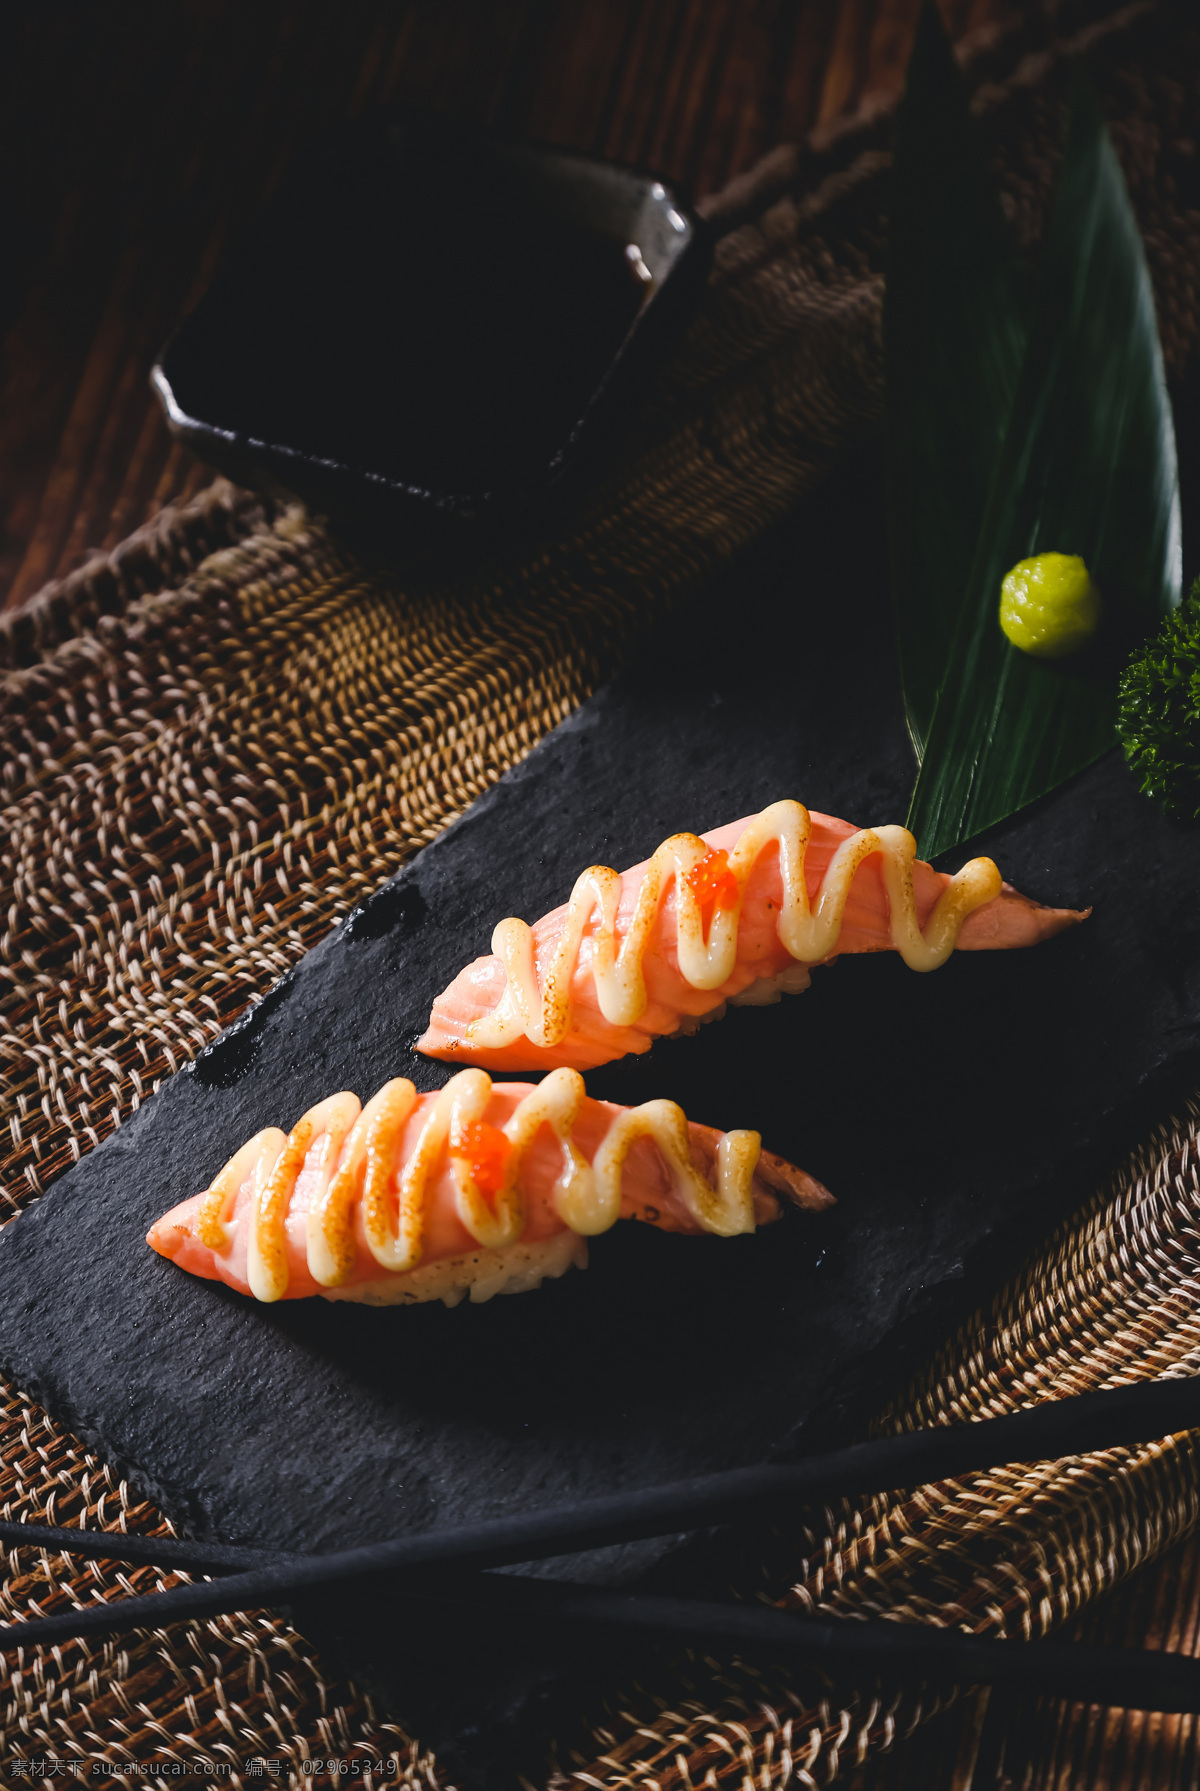 沙拉 三 纹 鱼 寿司 美味 精致 日本 三纹鱼 餐饮美食 西餐美食